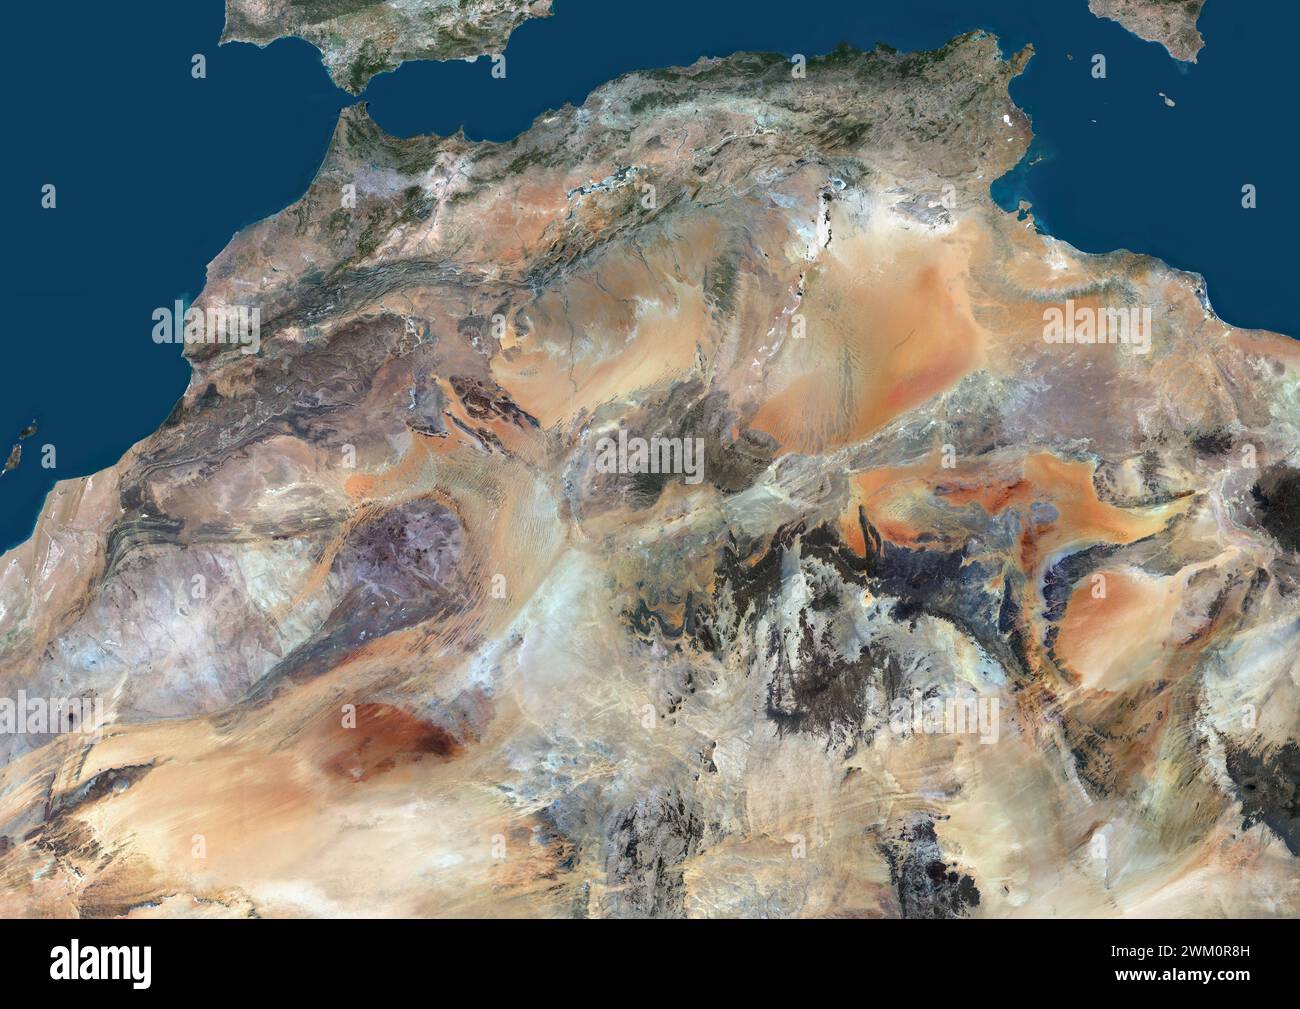 Immagine satellitare a colori dell'Africa settentrionale, che mostra Marocco, Algeria, Tunisia e paesi vicini. Foto Stock